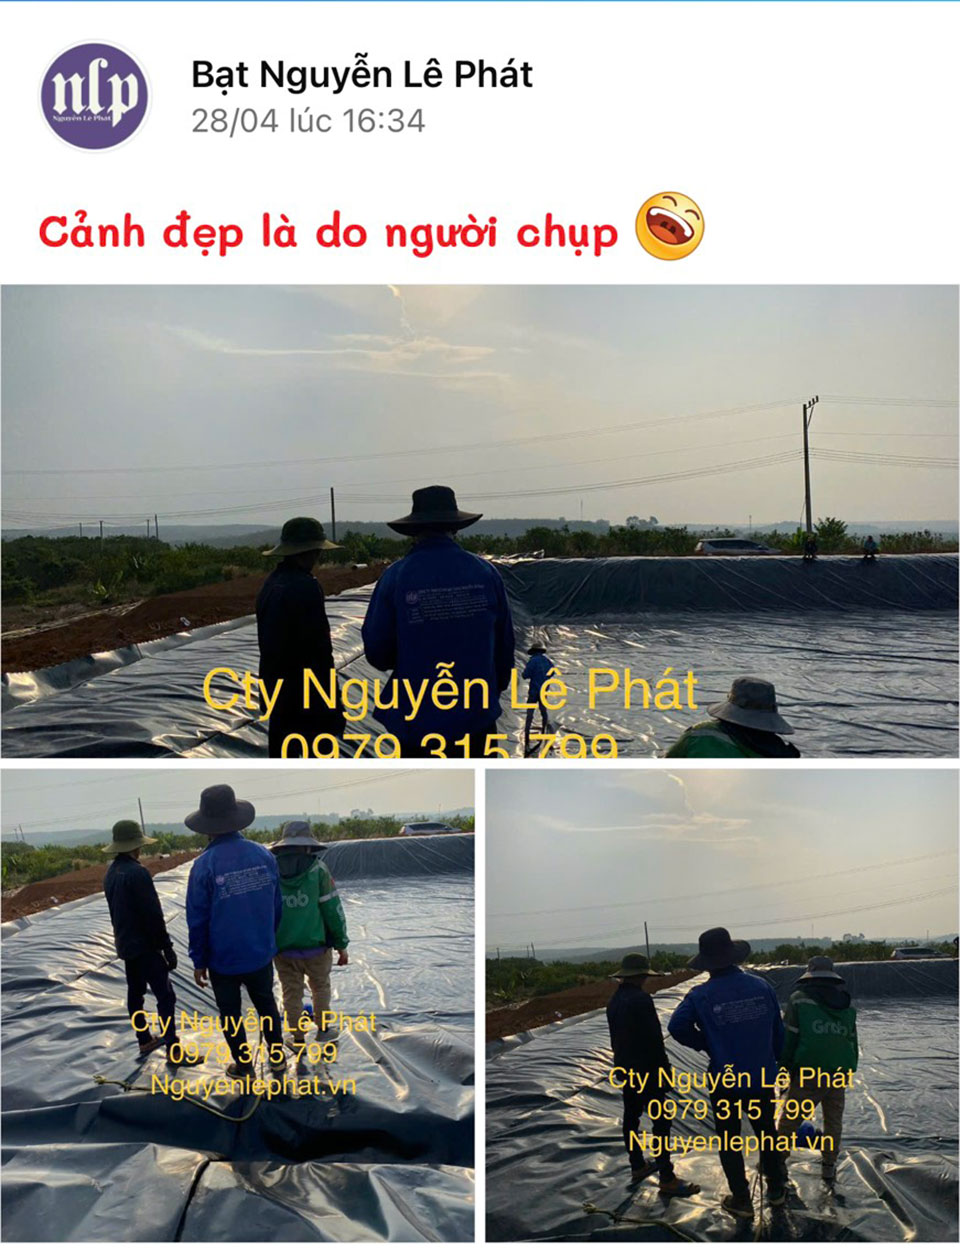 Thi công bạt lót hồ Ninh Thuận